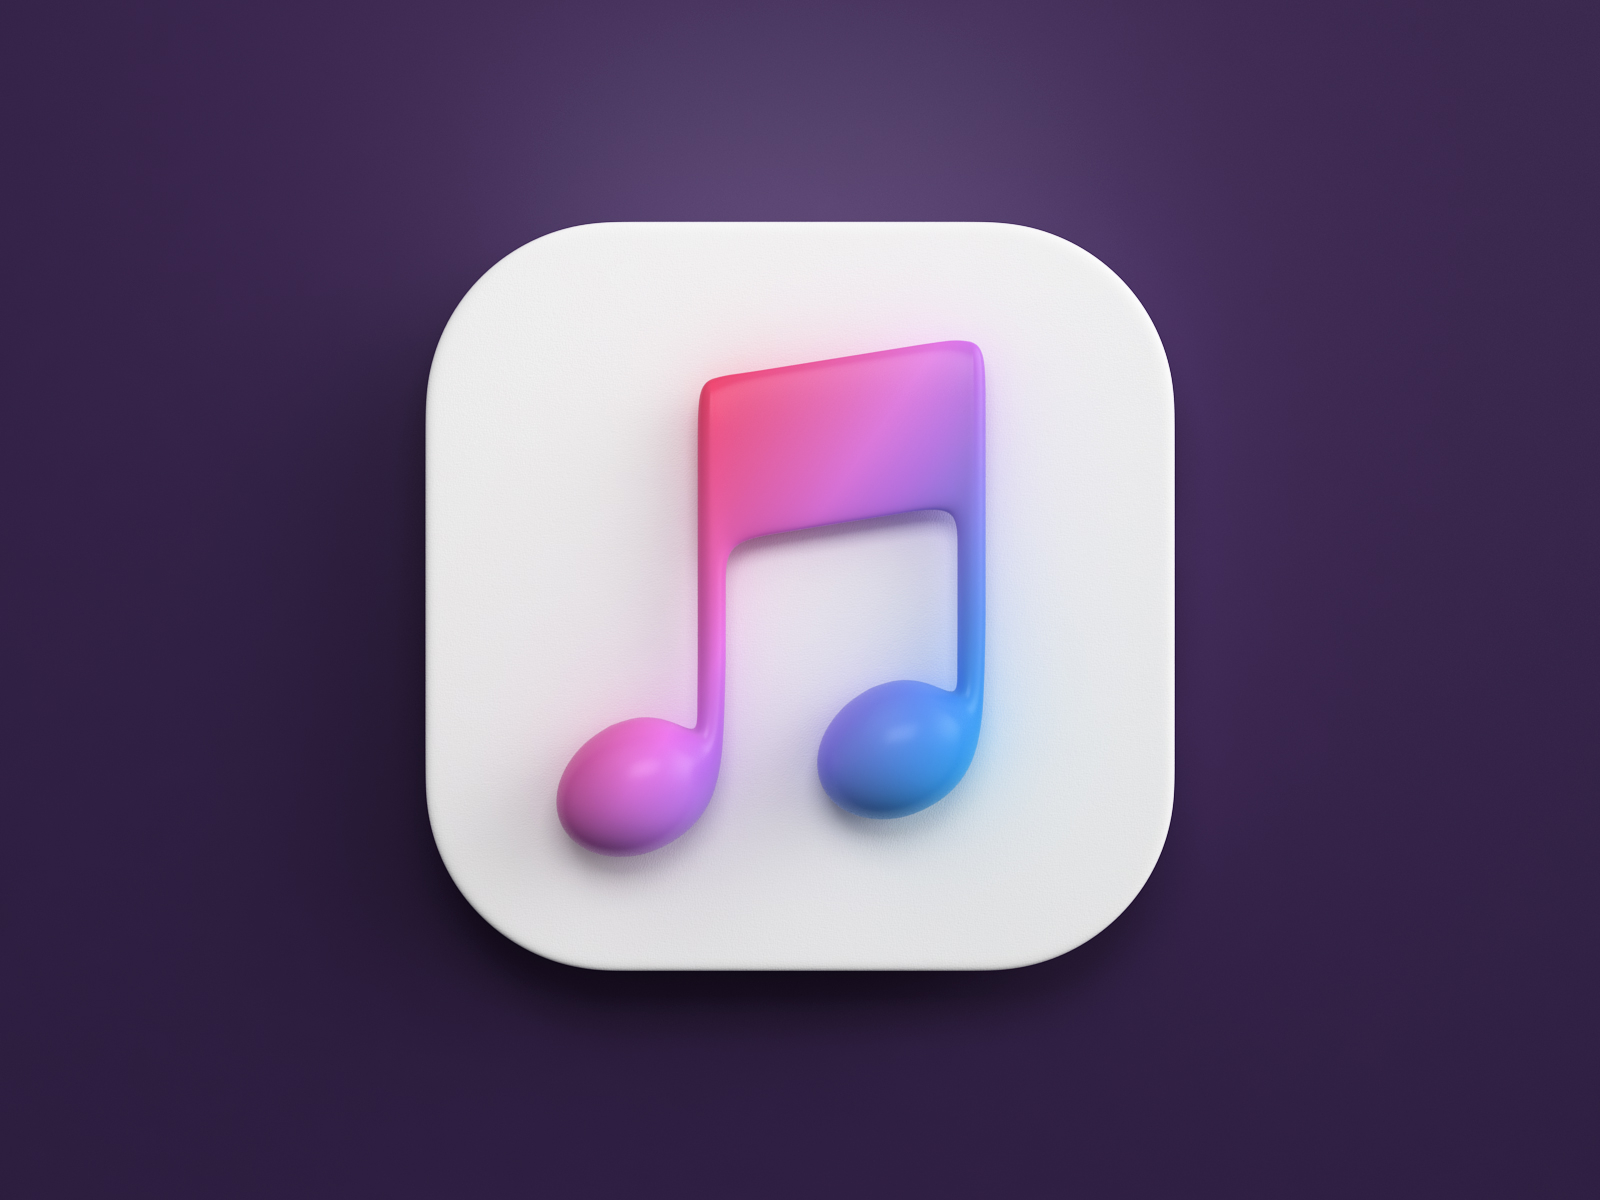 Music 03. Иконки приложений Apple. Иконка Apple Music. Значок музыки 3д. Значок Эппл Мьюзик.